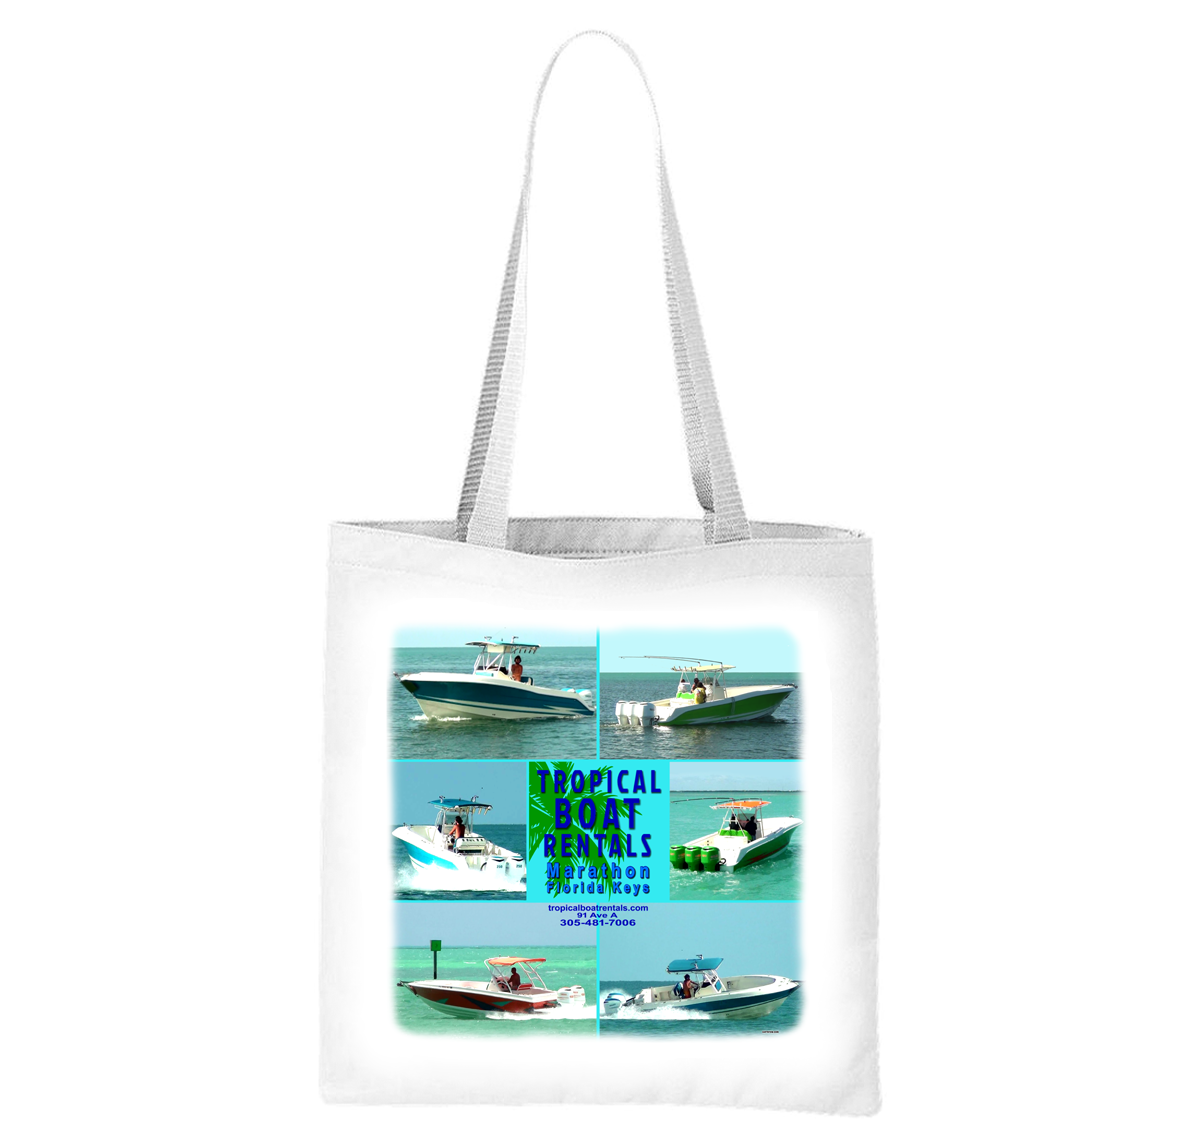 Tropical Boat Rentals Liberty Bag